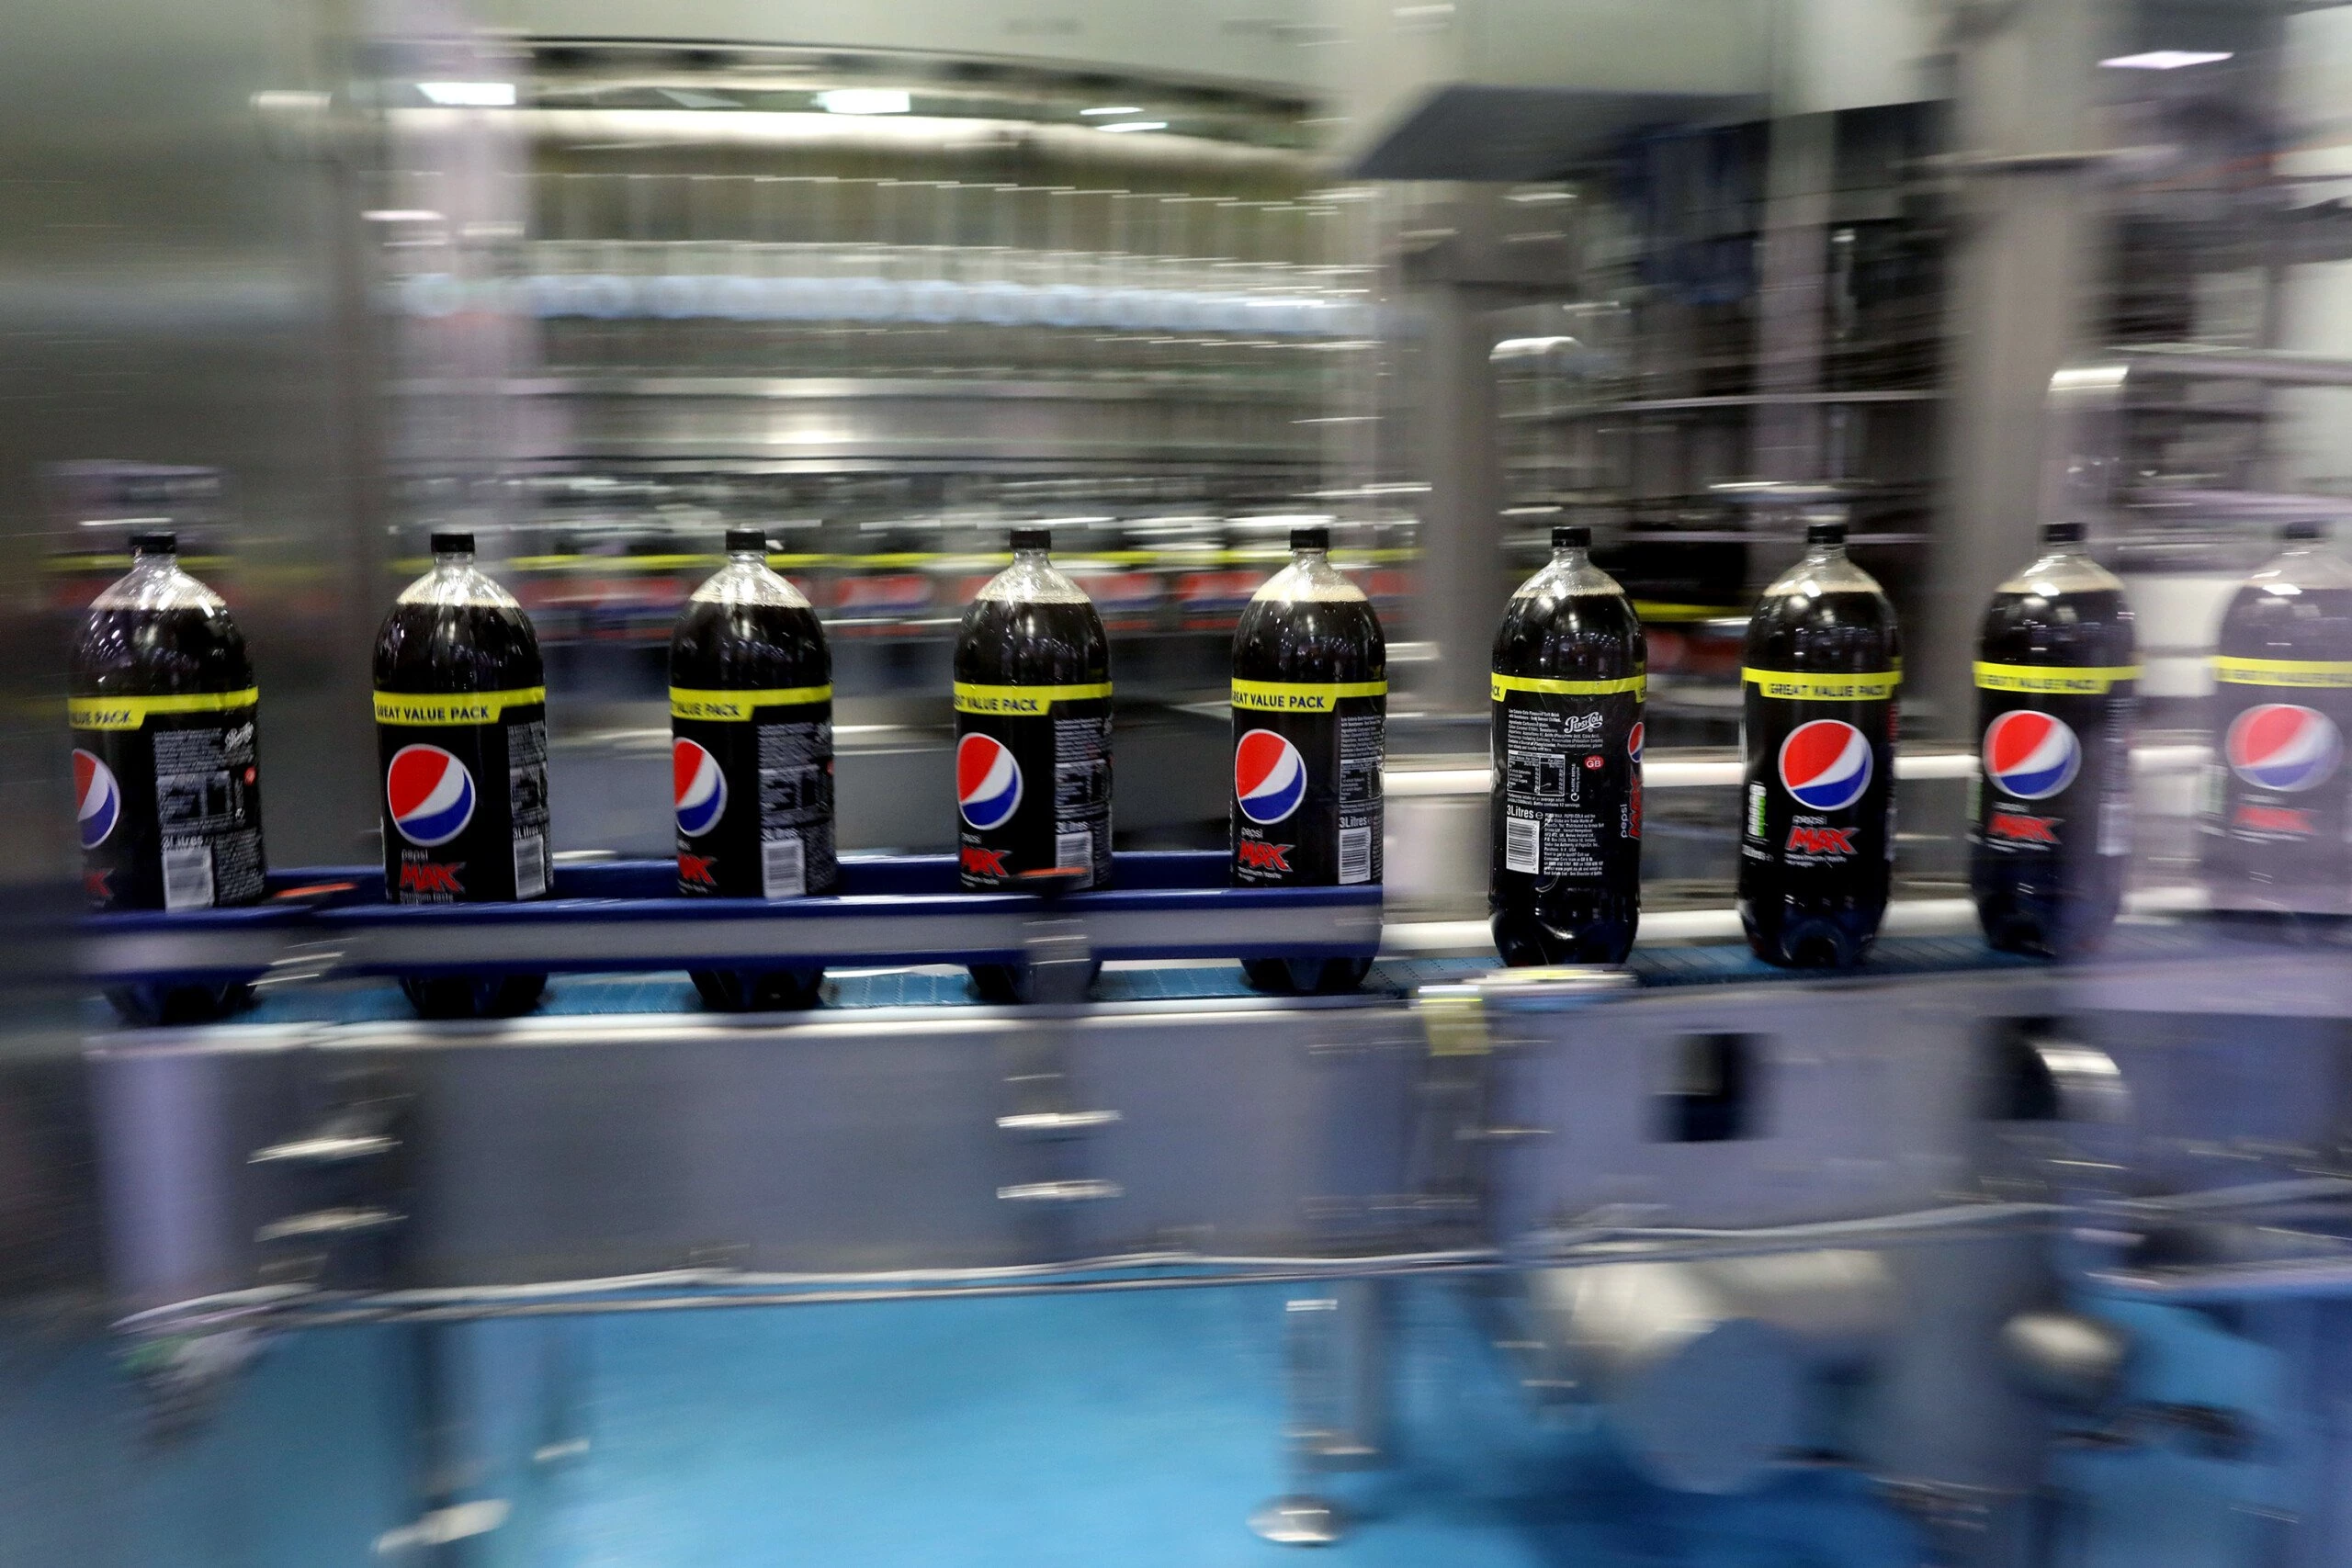 Garrafas da Pepsi Max viajam ao longo da linha de produção na fábrica e armazém da Britvic PLC em Leeds, Reino Unido, em 23 de janeiro de 2017.